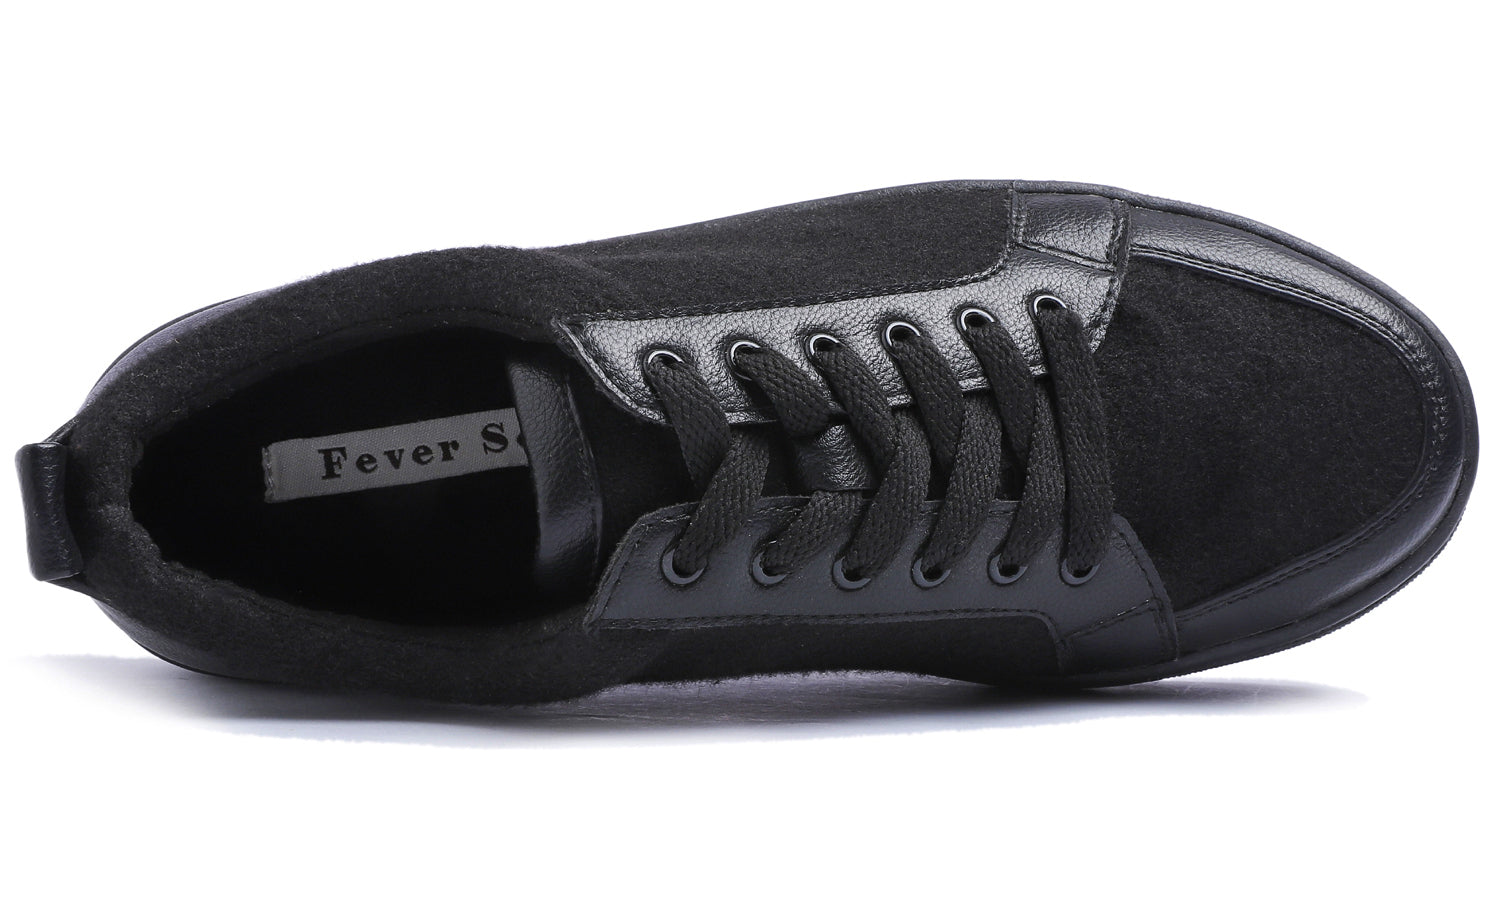 Feversole Women's Winter Vegan Leather Lightweight Platform Lace-Up Street Sneakers Black Faux Woolen PU